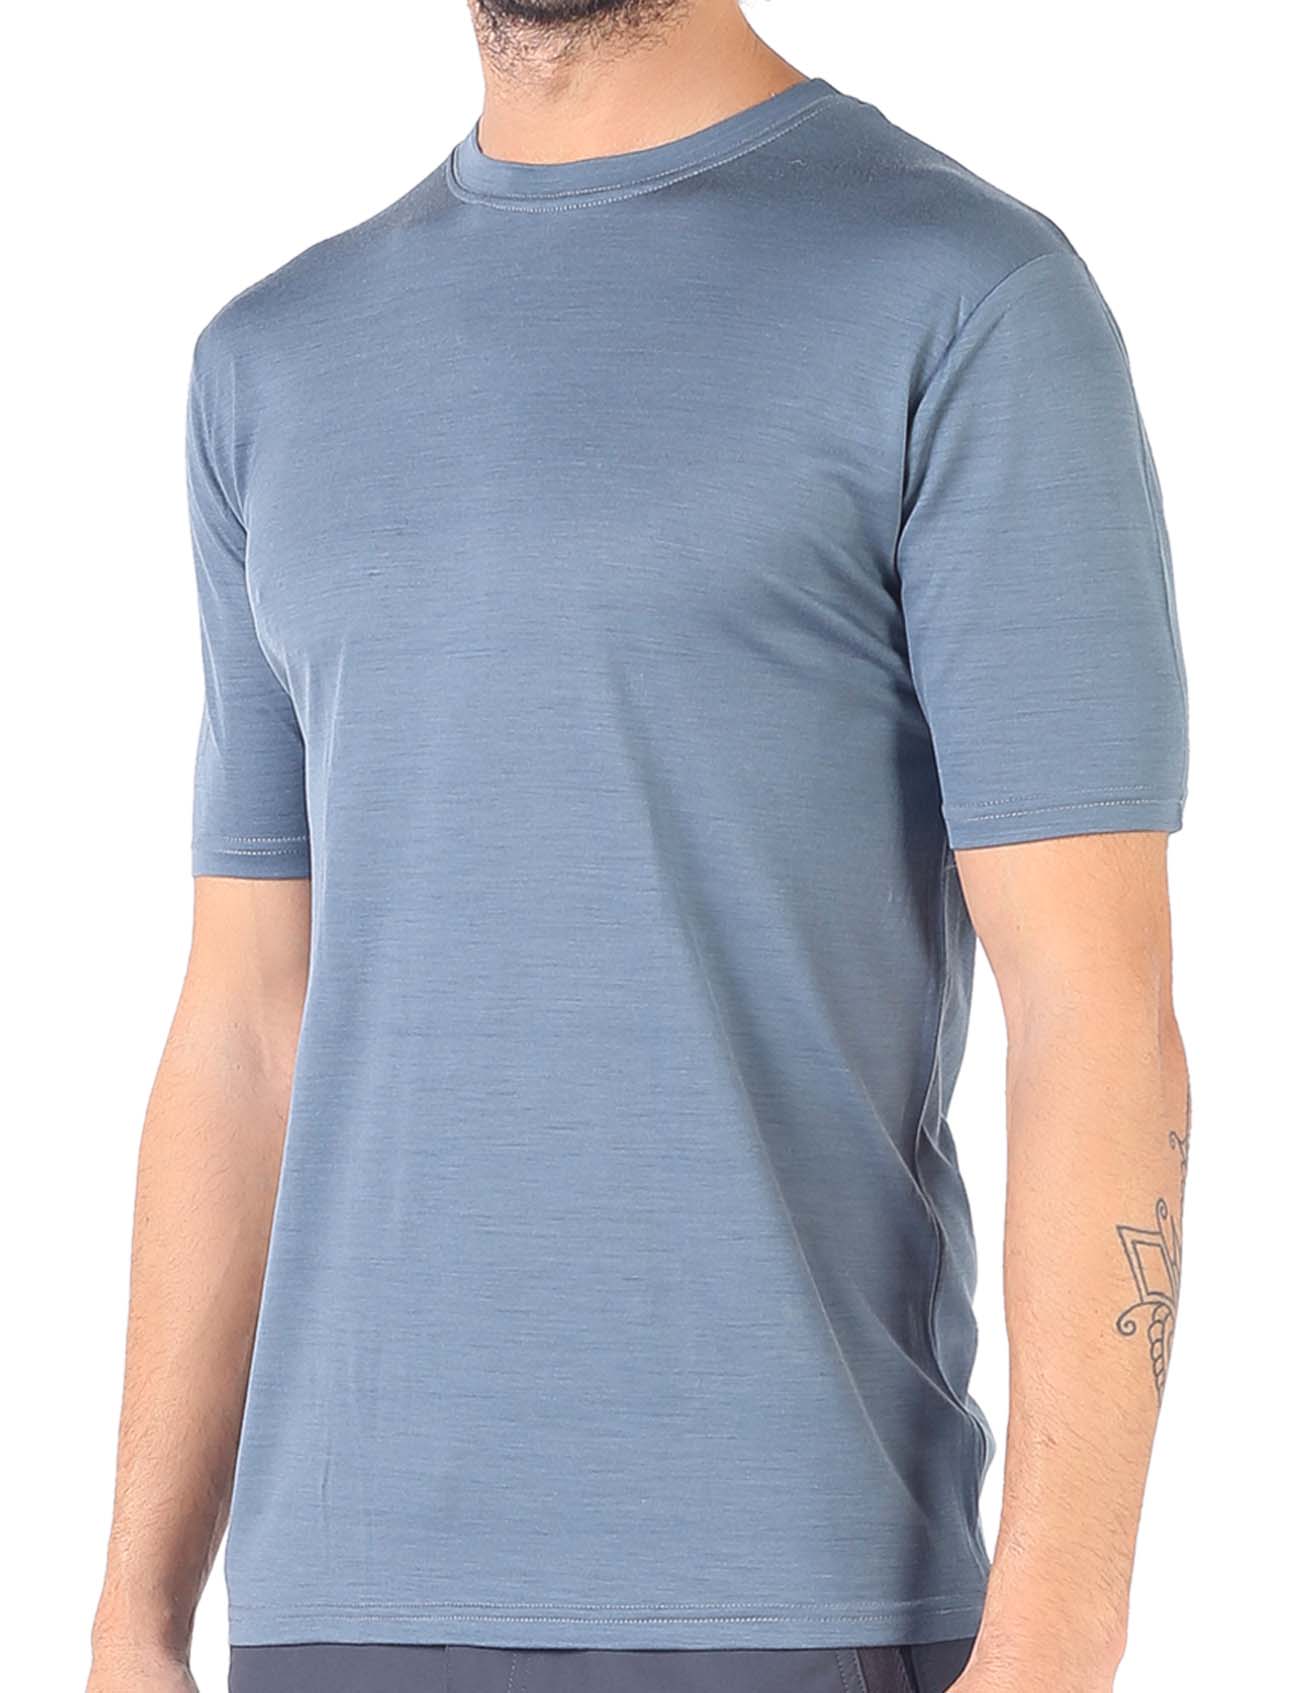 Men's Merino Notus Short Sleeve T-Shirt Crew Neck Gray